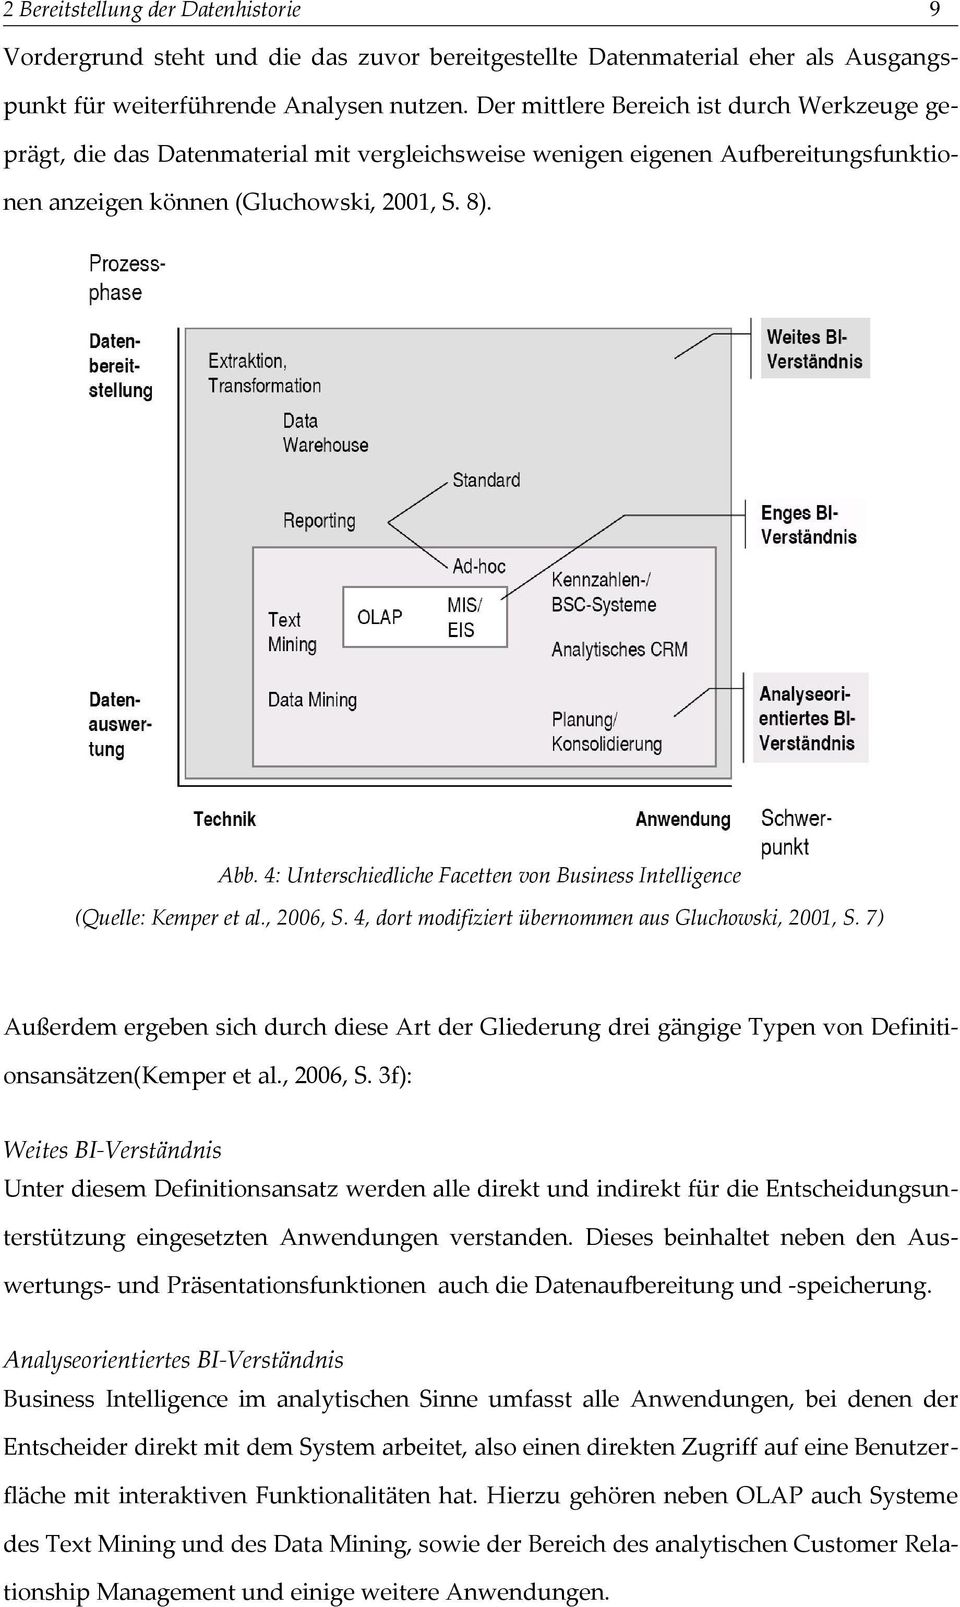 4: Unterschiedliche acetten von Business Intelligence (Quelle: Kemper et al., 2006,. 4, dort modifiziert übernommen aus Gluchowski, 2001,.